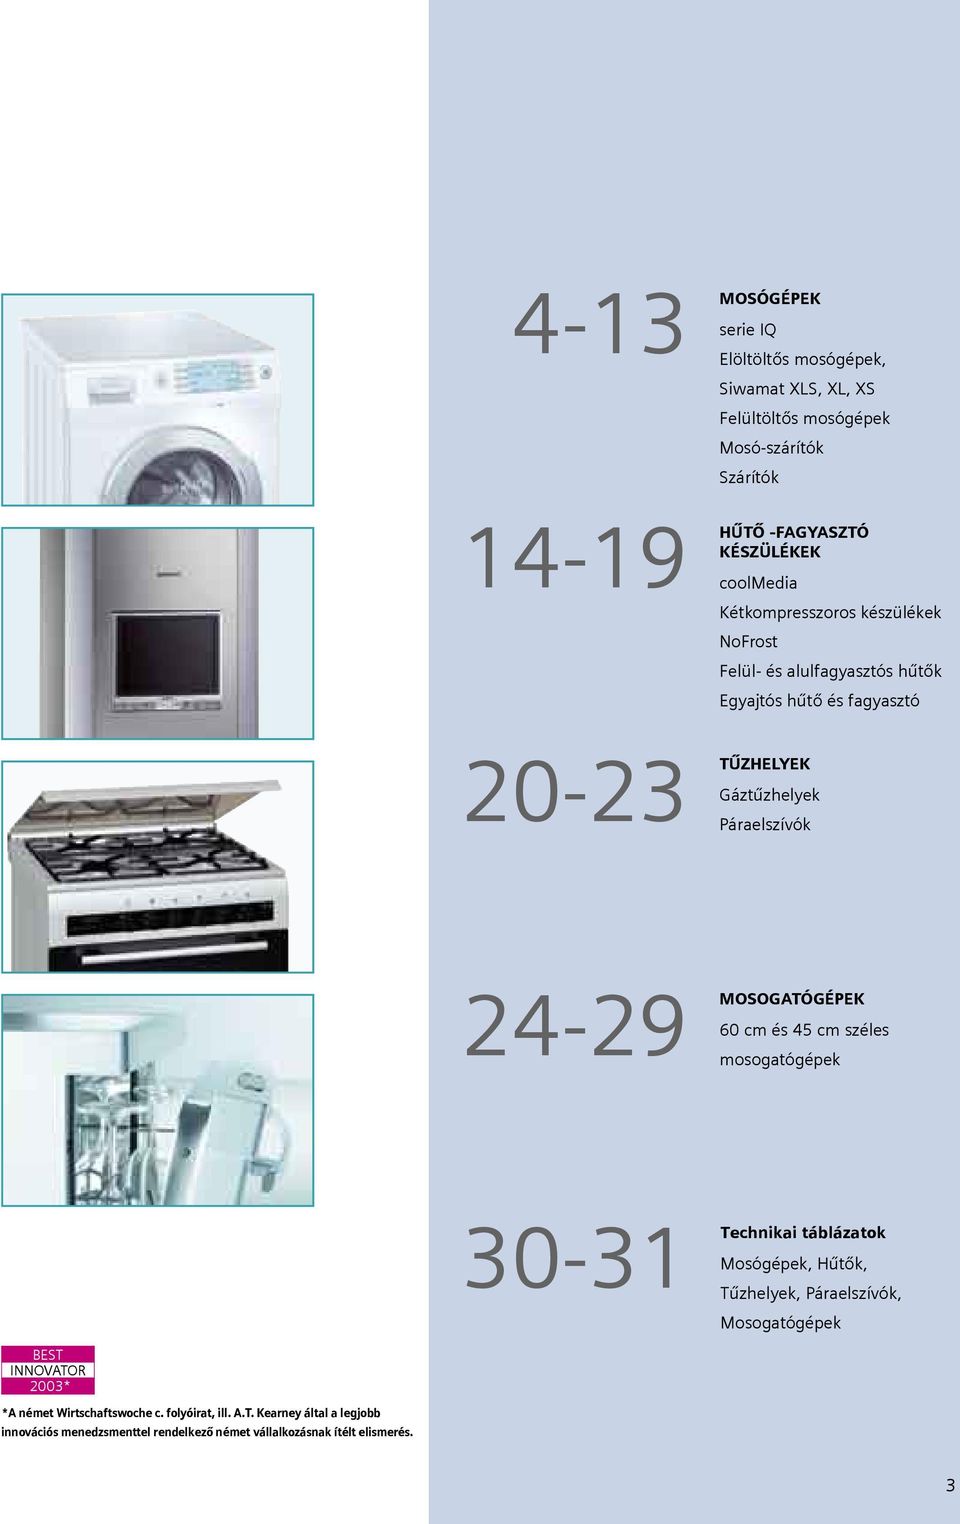 24-29 MOSOGATÓGÉPEK 60 cm és 45 cm széles mosogatógépek 30-31 Technikai táblázatok Mosógépek, Hűtők, Tűzhelyek, Páraelszívók, Mosogatógépek BEST